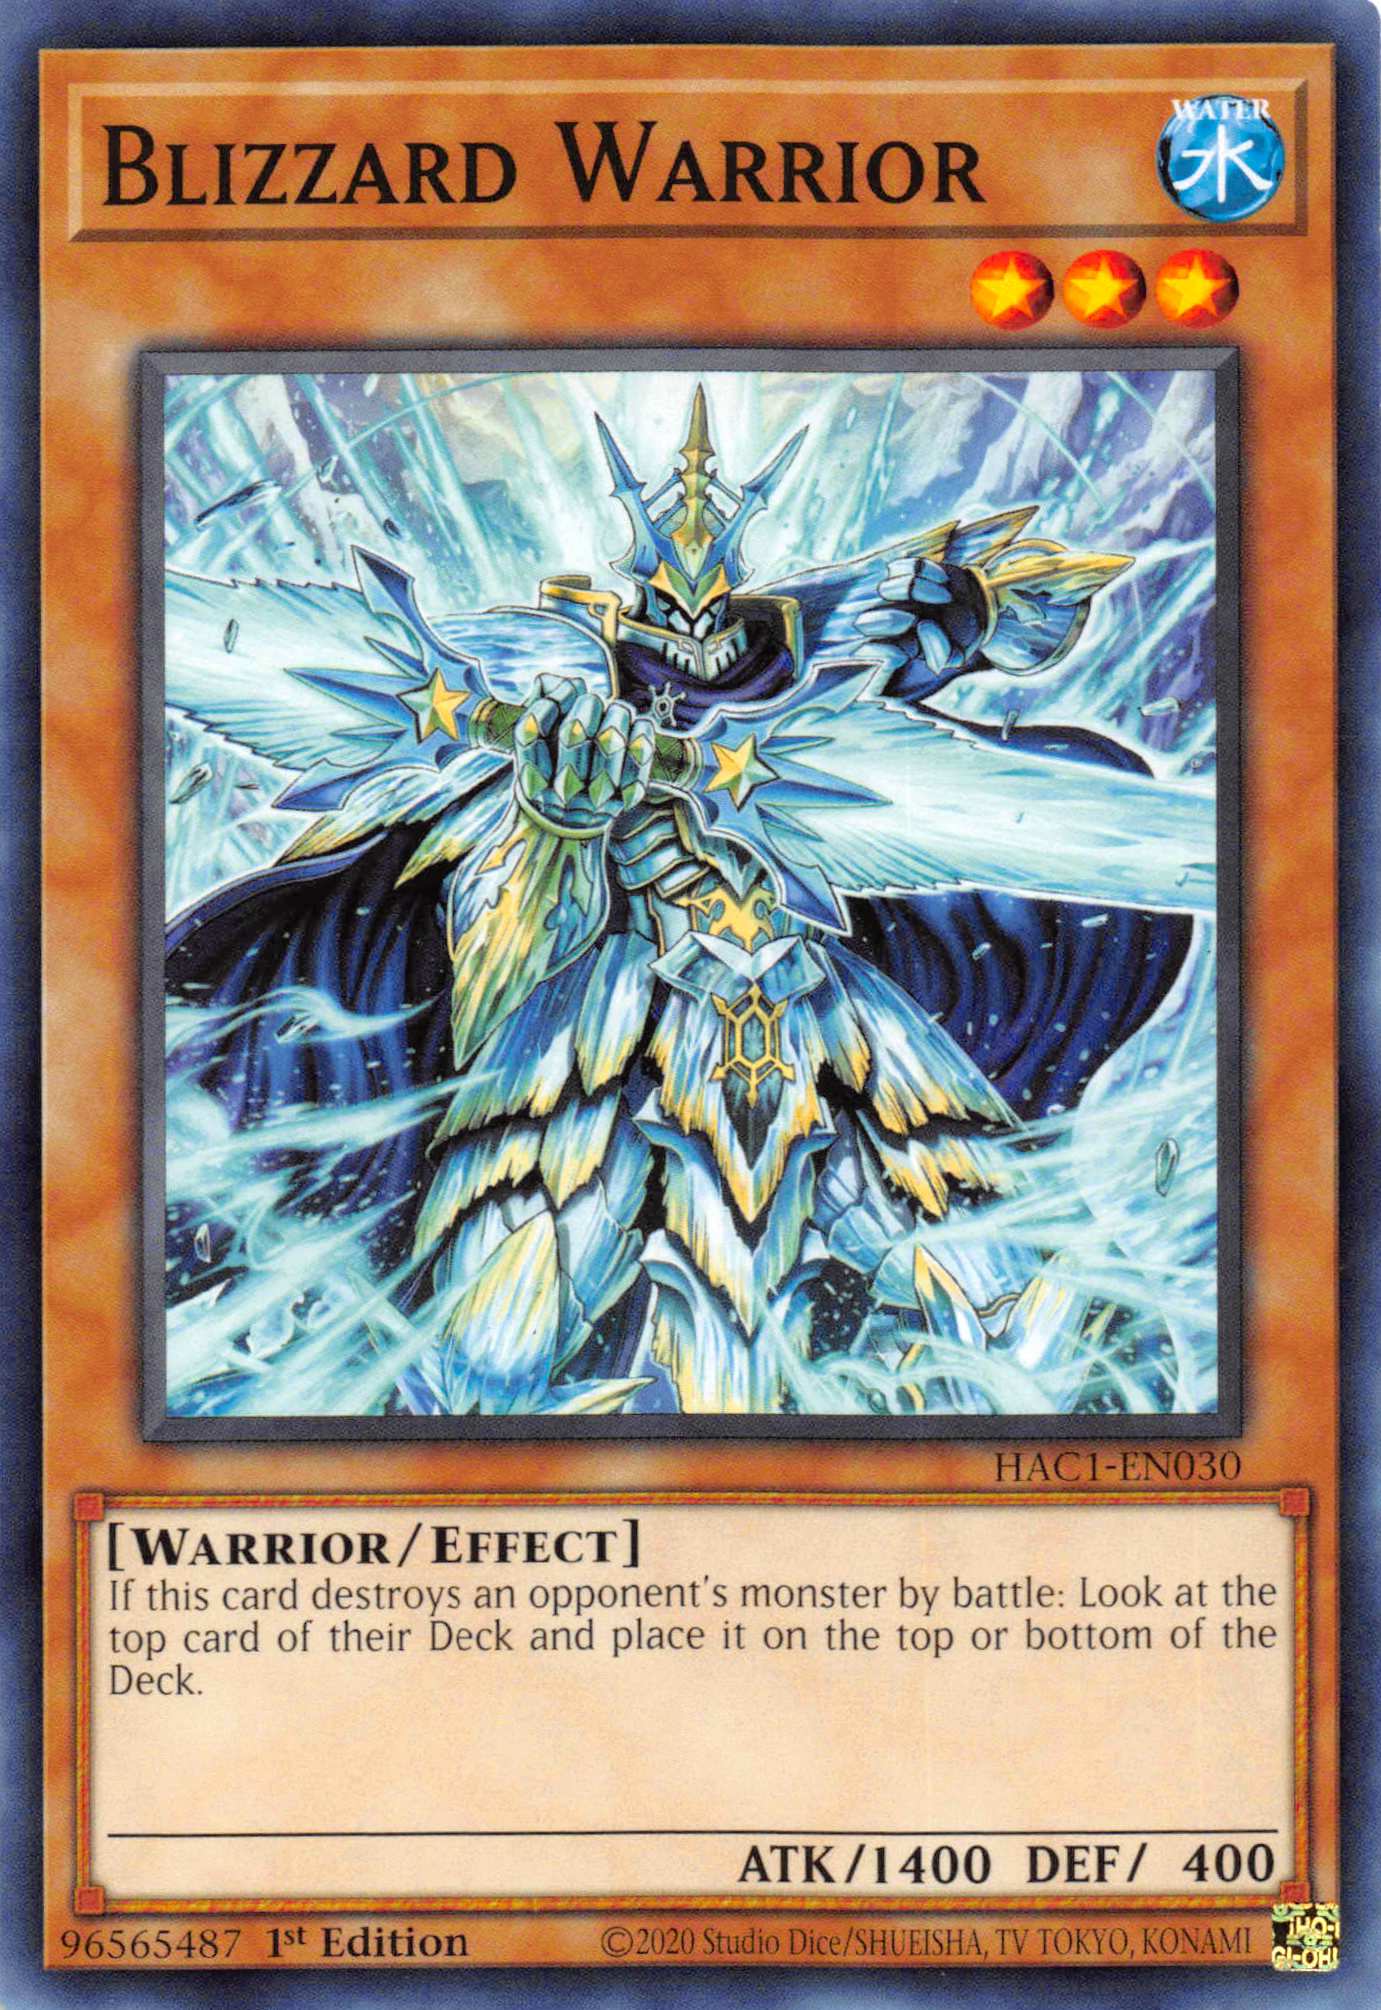 Blizzard Warrior [HAC1-EN030] Common - Duel Kingdom